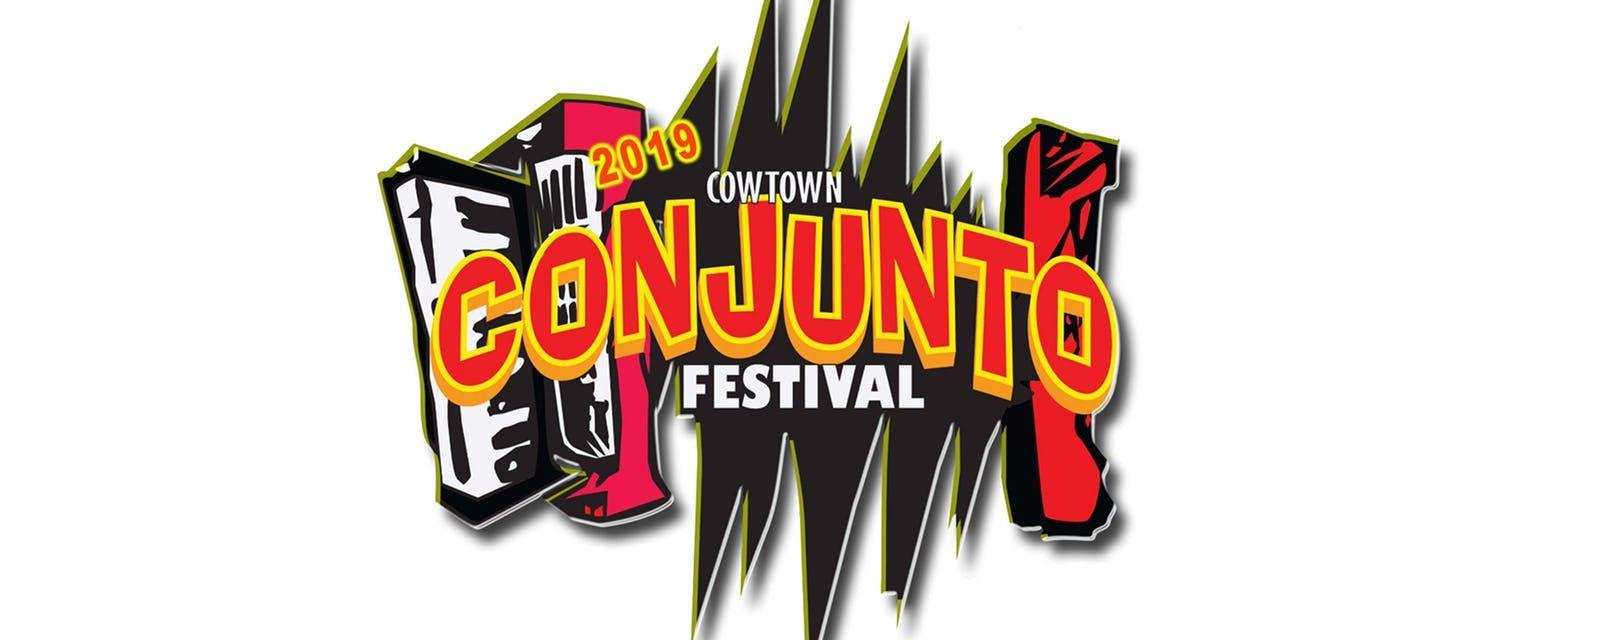 Cojunto Logo - 8th Annual Cowtown Conjunto Festival Bob's Texas